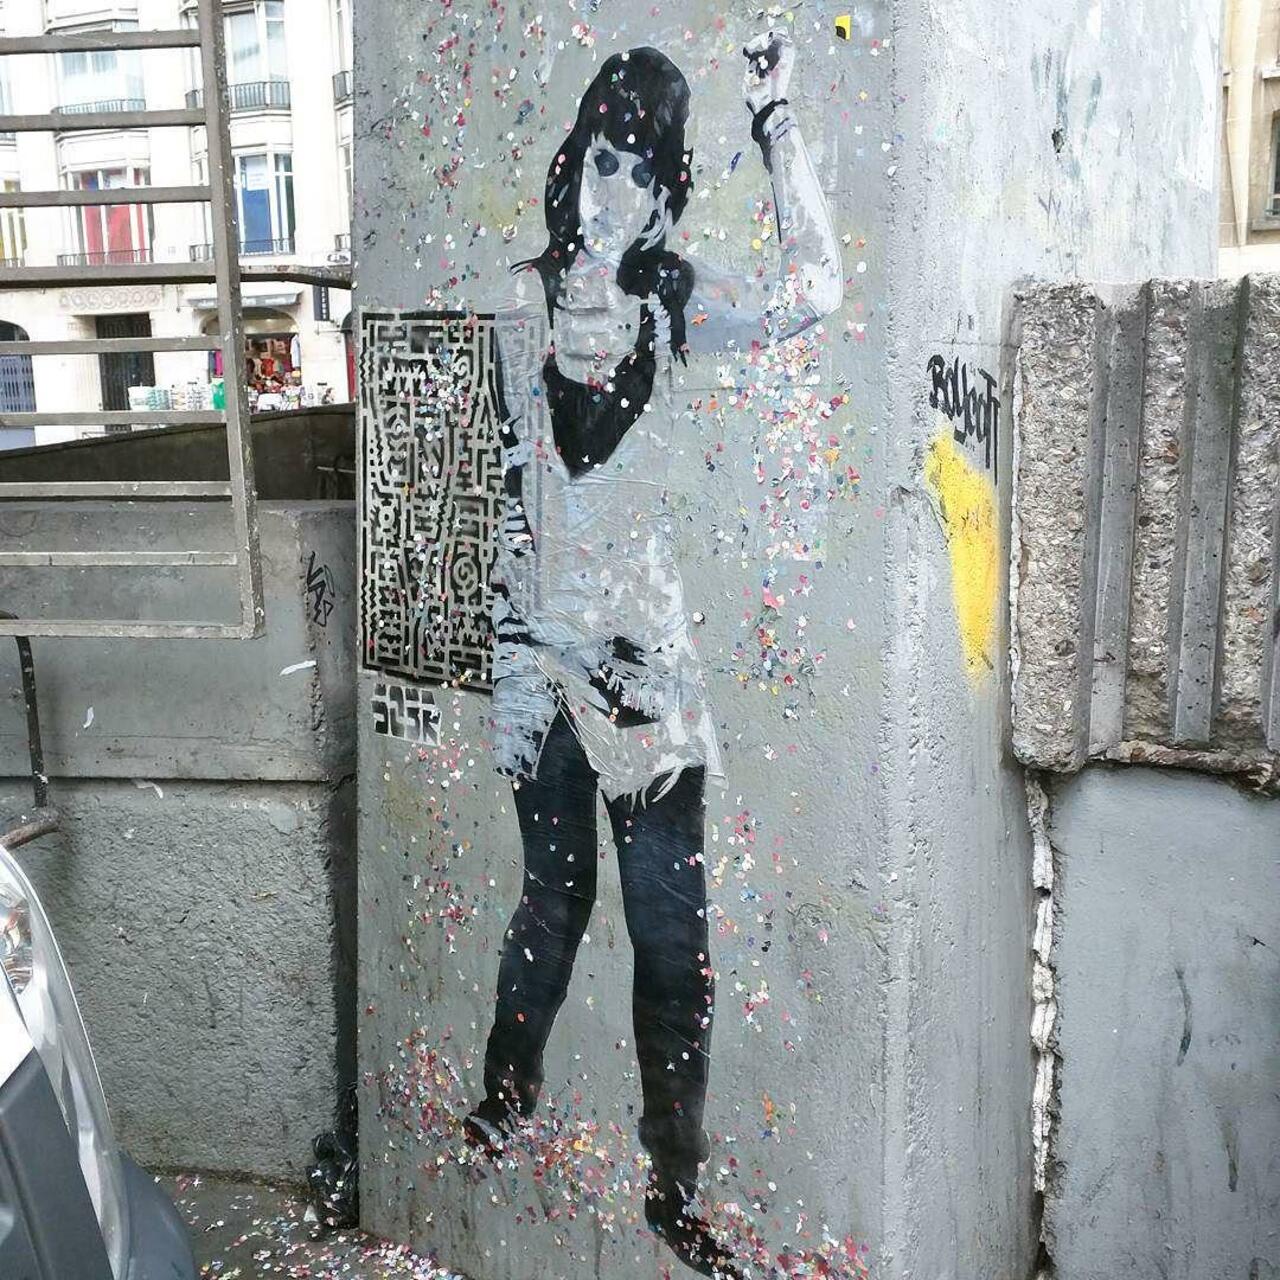 #Paris #graffiti photo by @alphaquadra http://ift.tt/1hjeLdH #StreetArt http://t.co/GBgjXefBfD